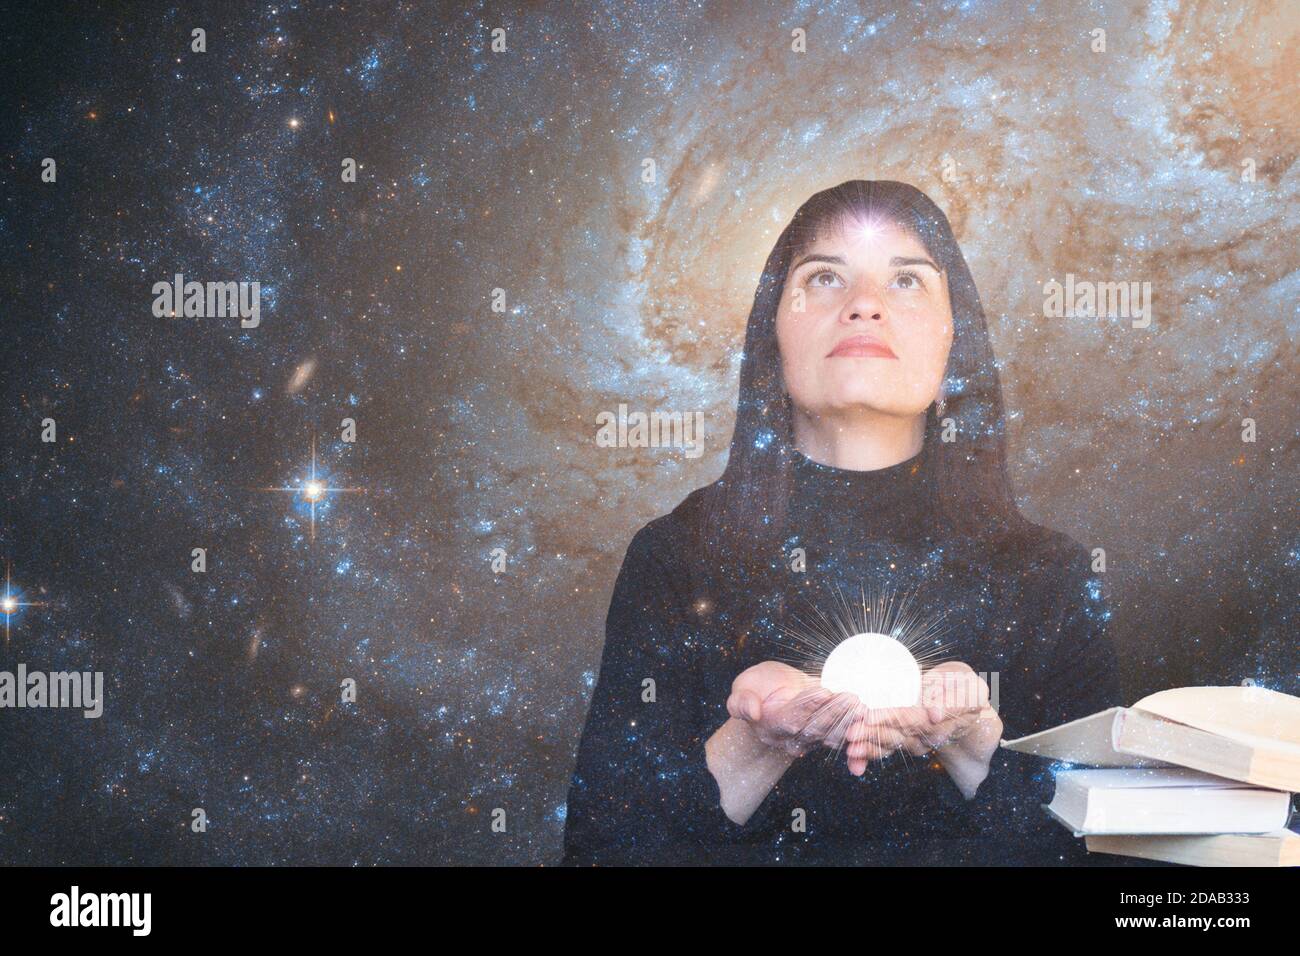 Ein Mädchen mit einem Stern in der Stirn hält einen leuchtenden Ball in den Händen und blickt auf den Sternenhimmel. Das Konzept der paranormalen Fähigkeiten, Hellsehen. Elemente dieses Bildes, die von der NASA eingerichtet wurden. Stockfoto